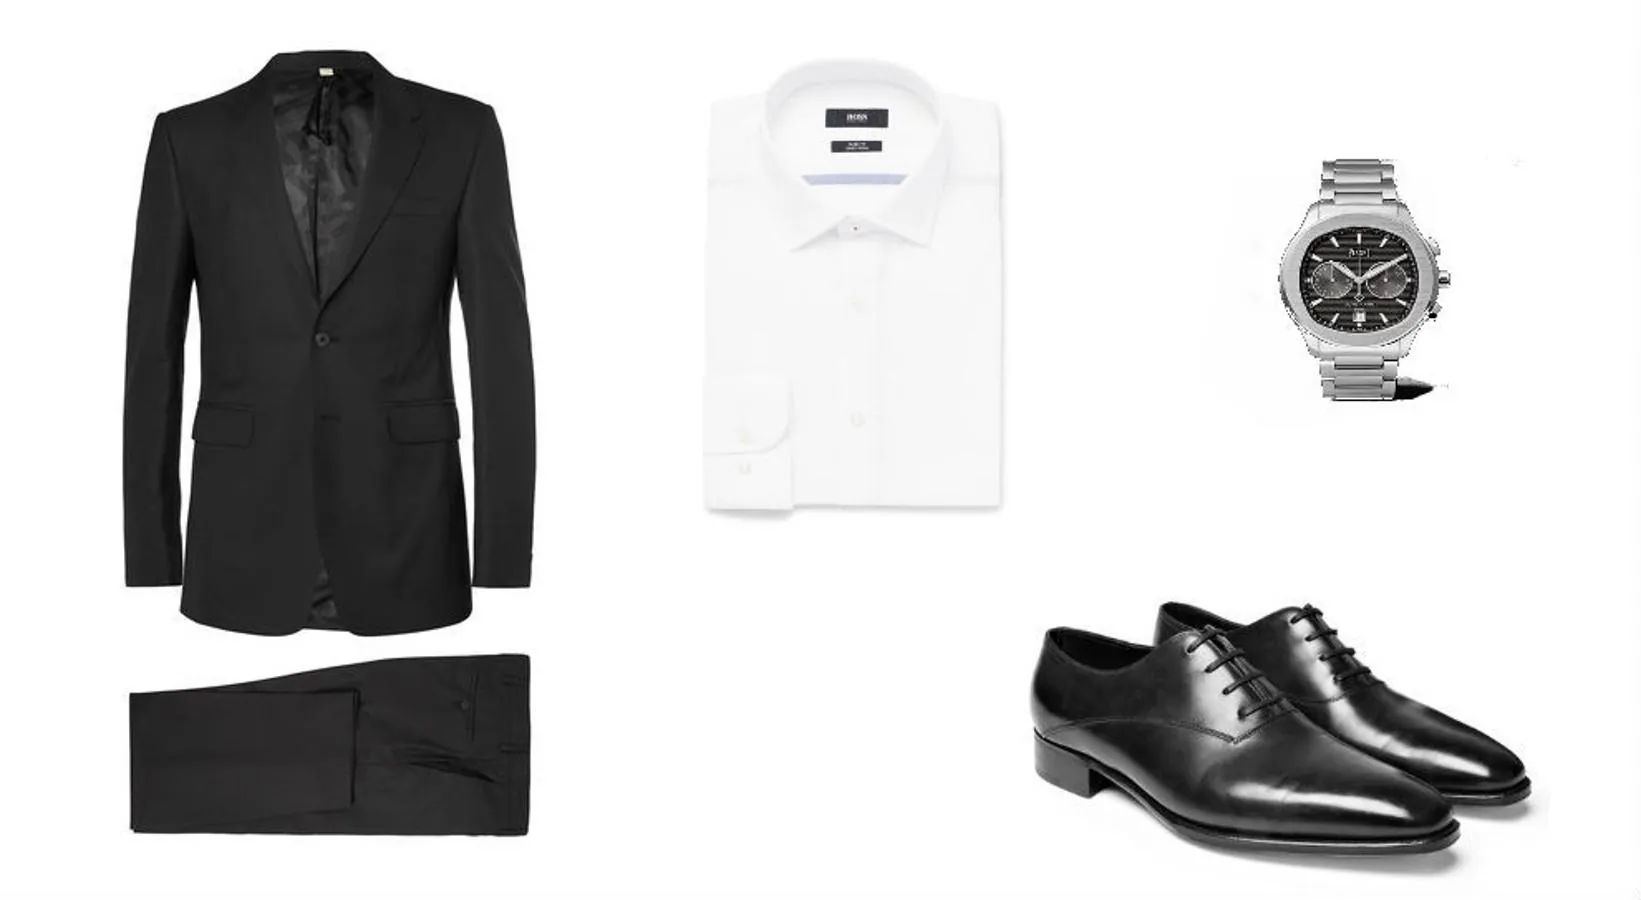 Look inspirado en Ray Donovan. Traje de Burberry en color negro (Precio: 995 euros), camisa blanca de Hugo Boss (Precio: 100 euros) y zapatos de John Lobb (Precio: 1370 euros). Como complemento, reloj de acero de Piaget (Precio: 14700 euros).